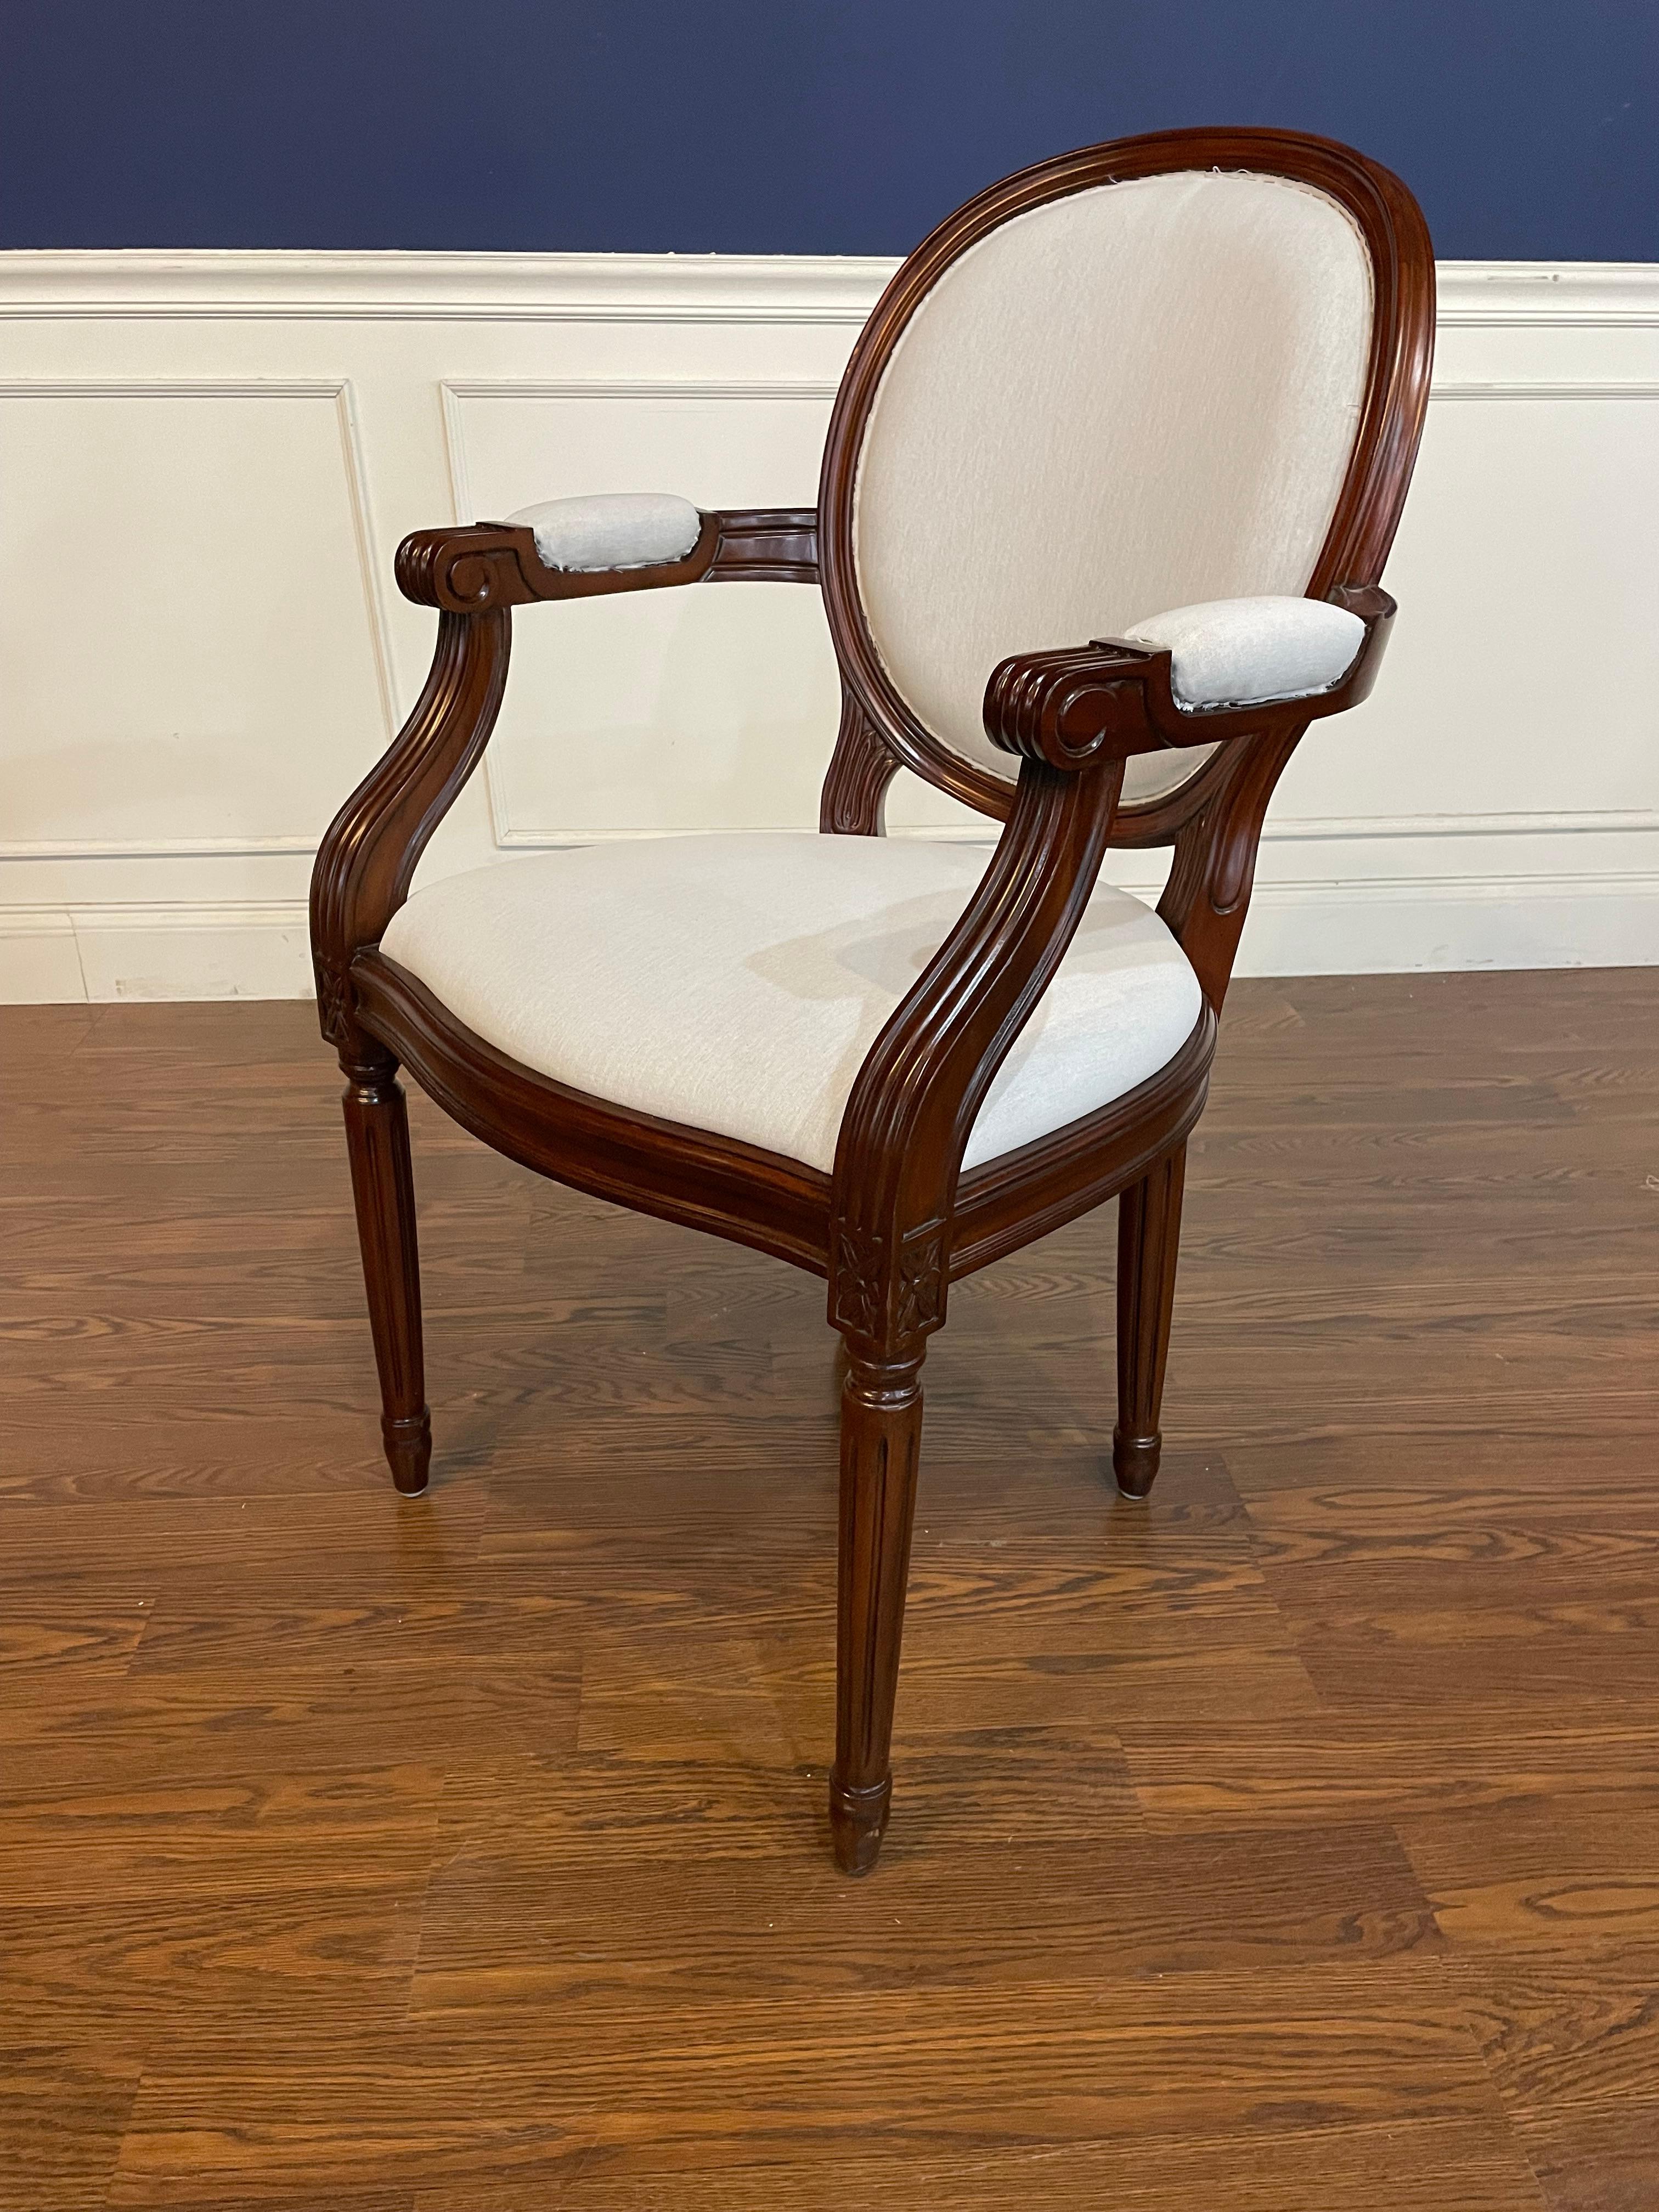 Dies ist ein Satz von acht (2 Arme und 6 Seiten) von Louis XVI Stil Mahagoni Esszimmerstühle von Leighton Hall.  Sie haben eine klassische runde Rückenlehne und runde, kannelierte und sich verjüngende Beine. Sie haben eine mittelbraune Mahagonifarbe